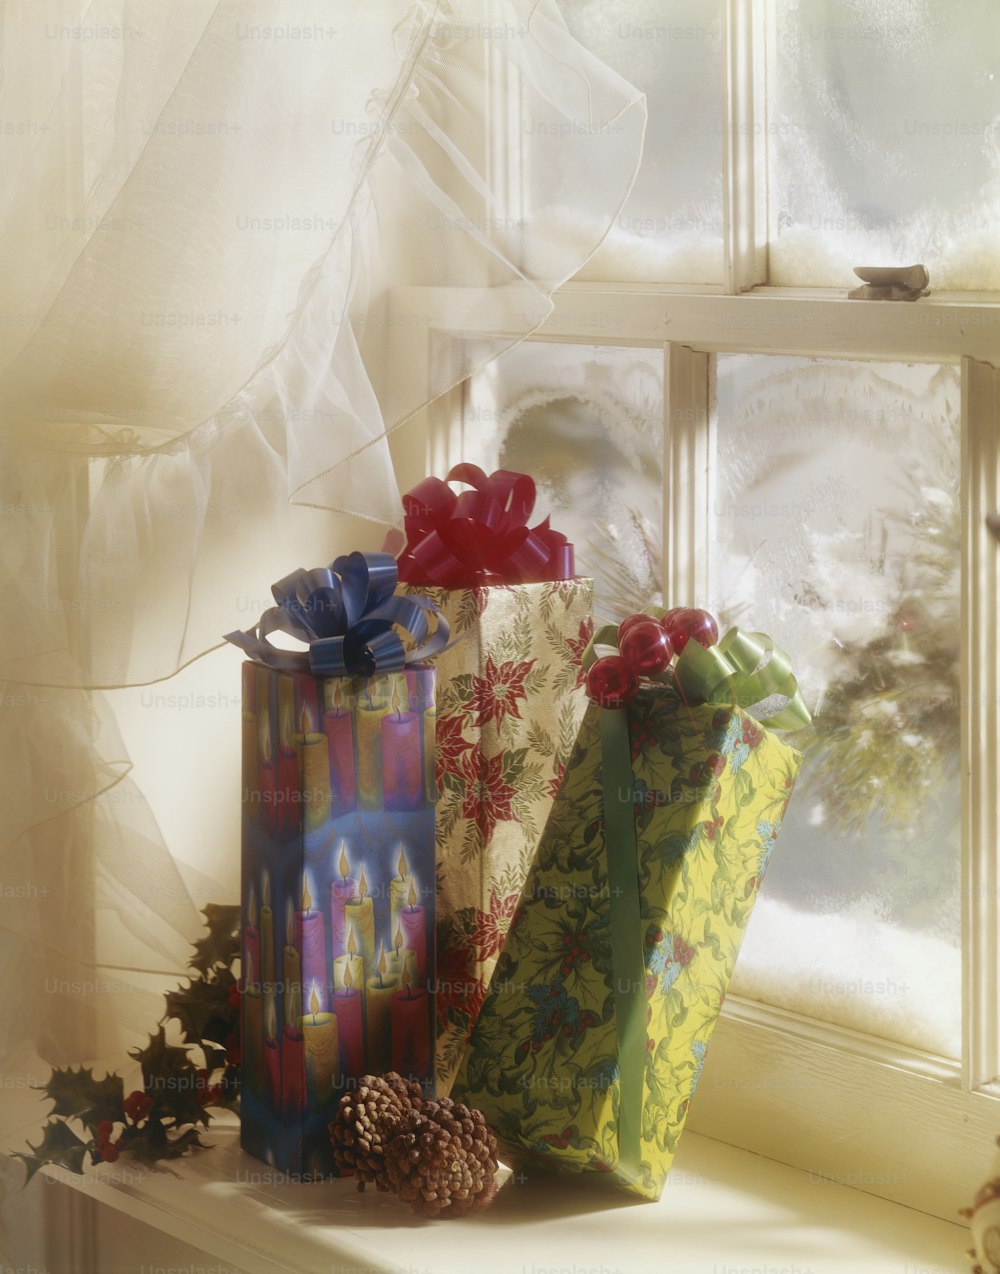 Un gruppo di regali incartati seduti sopra un davanzale della finestra